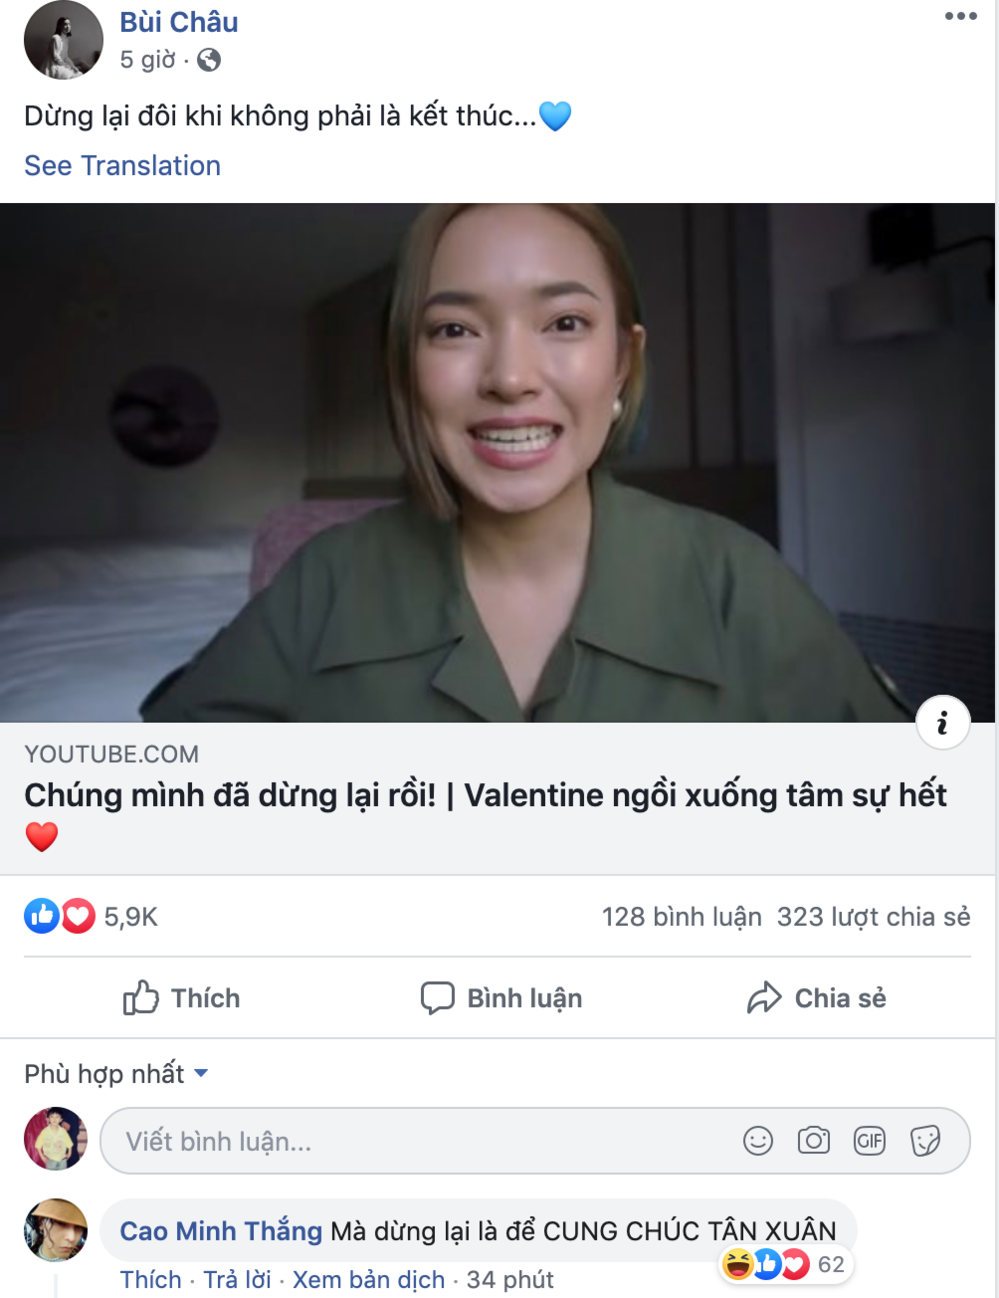  
Châu Bùi xác nhận trạng thái độc thân của mình bằng Vlog nói về chuyện chia tay (Ảnh chụp màn hình)